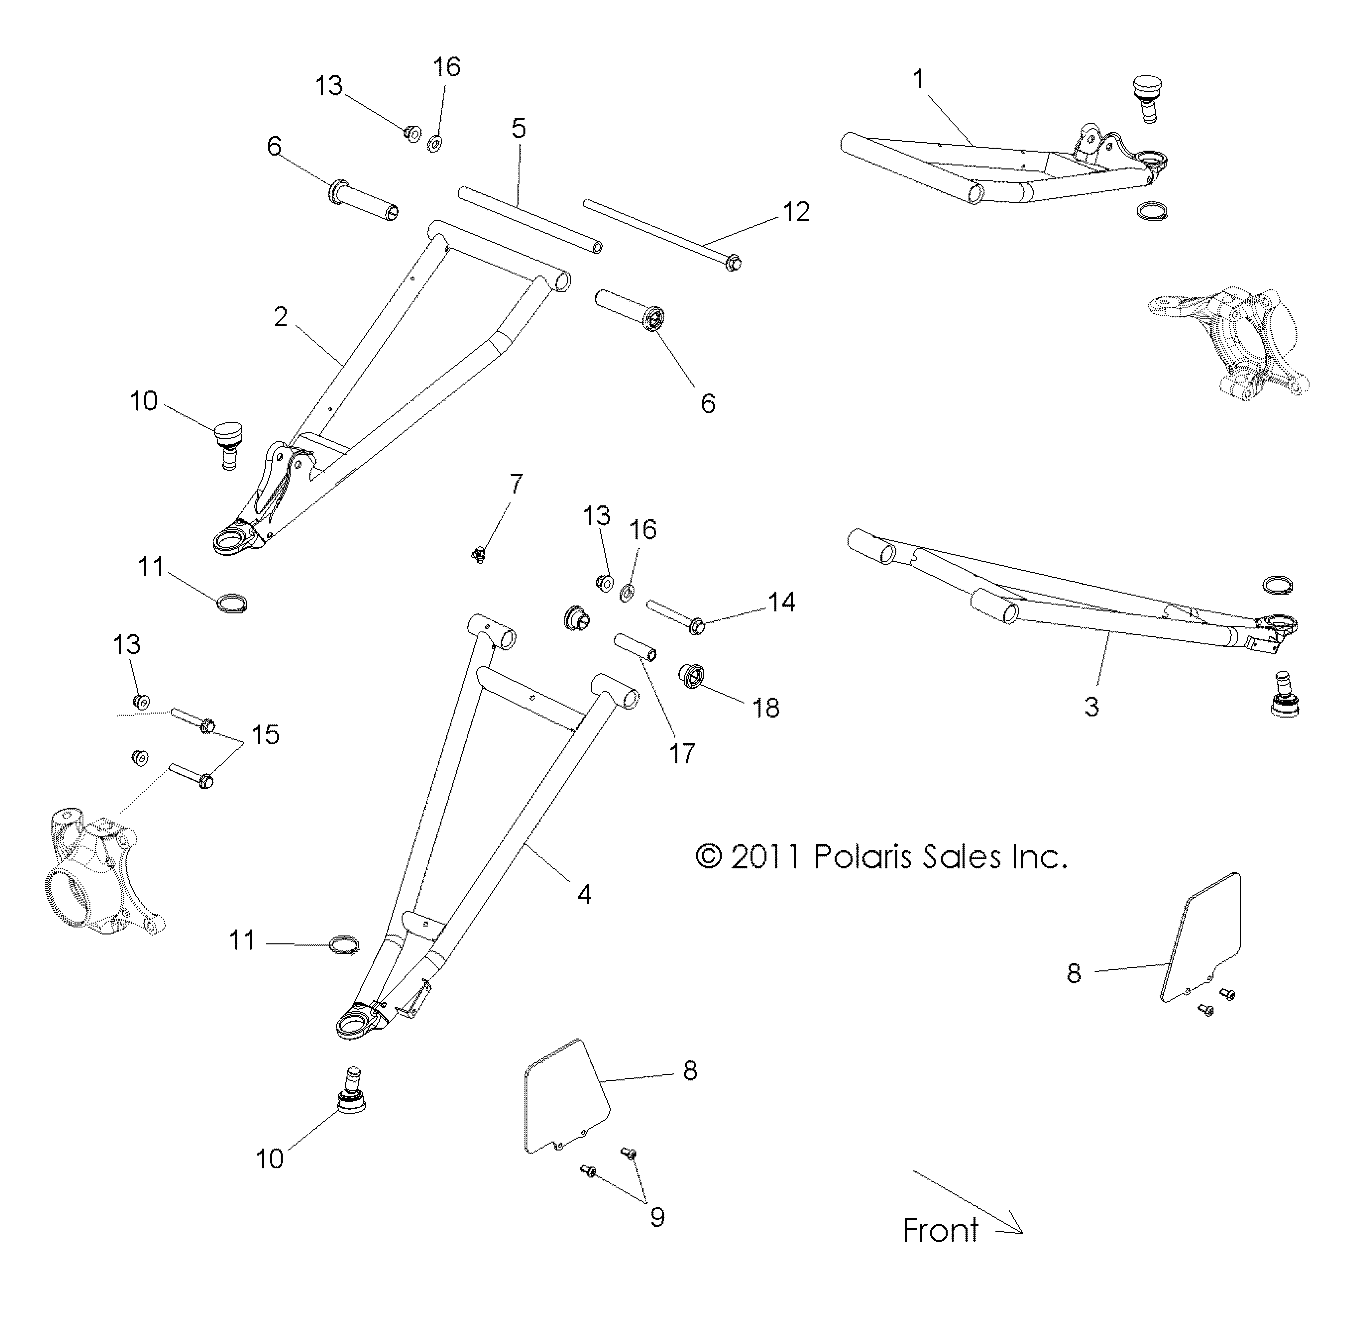 Foto diagrama Polaris que contem a peça 1018356-293